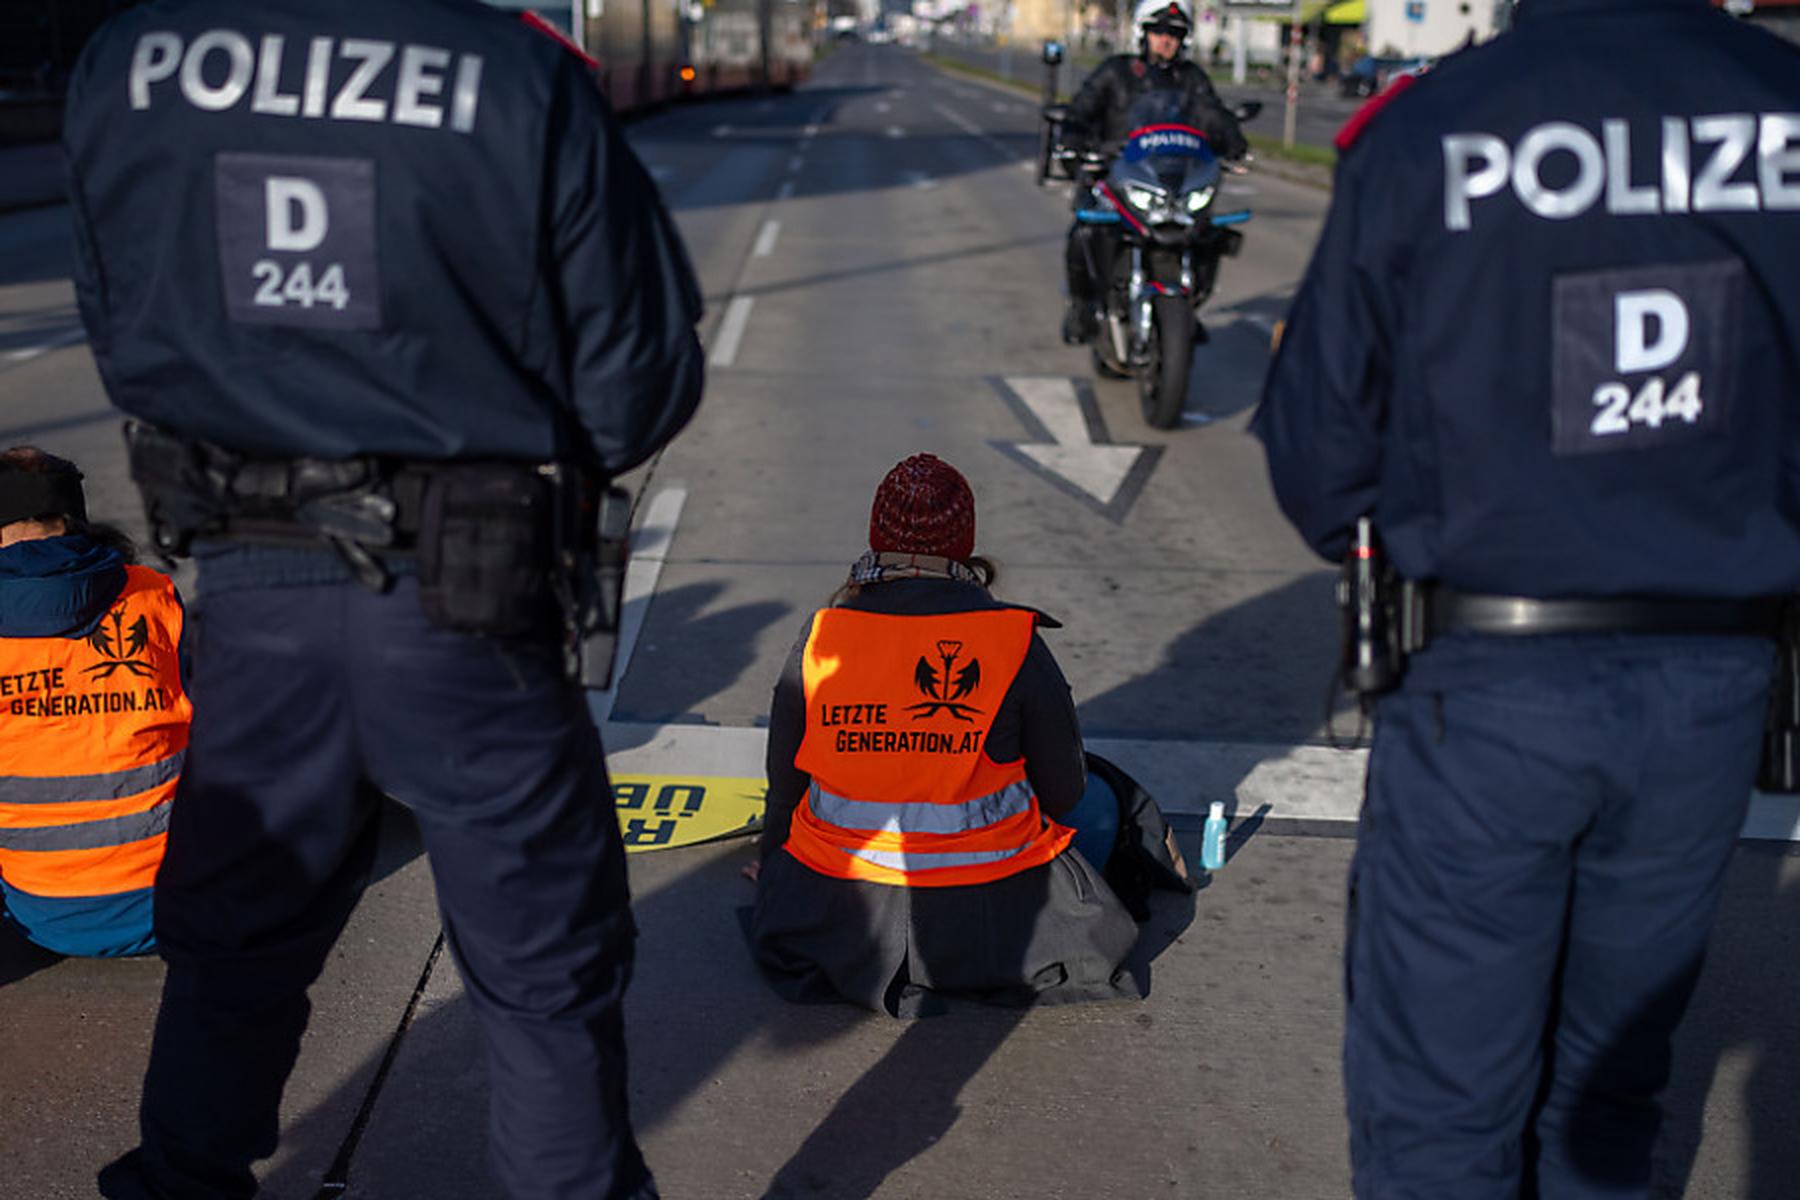 Wien/Österreich-weit: Ermittlungen wegen Verleumdung gegen 